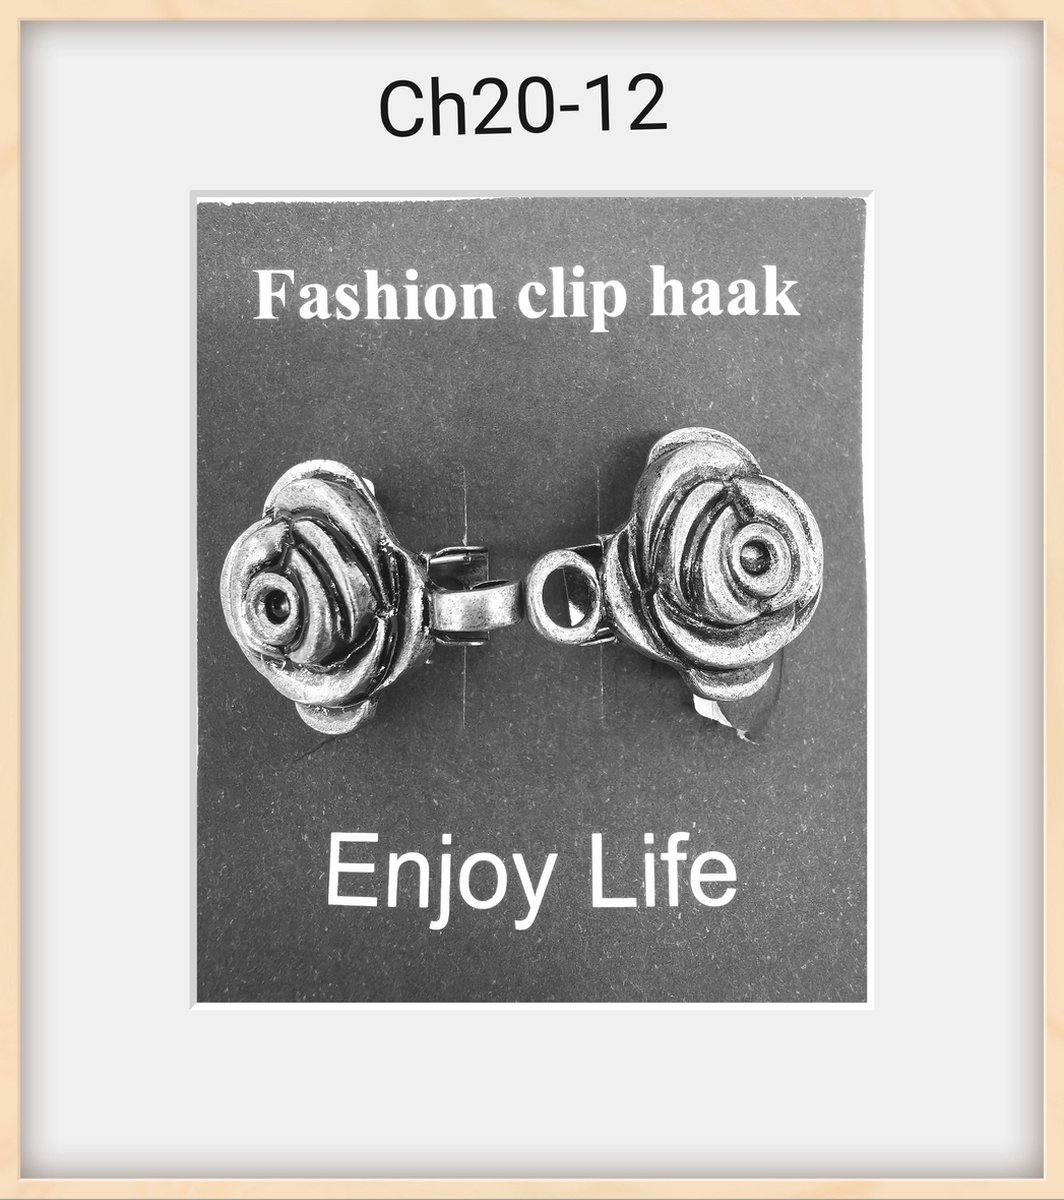 Vestsluiting - clip met haakje - 3d roosje in knopje - voor - vest - sjaal - omslagdoek in kleur antiek zilver look. - Lili 41